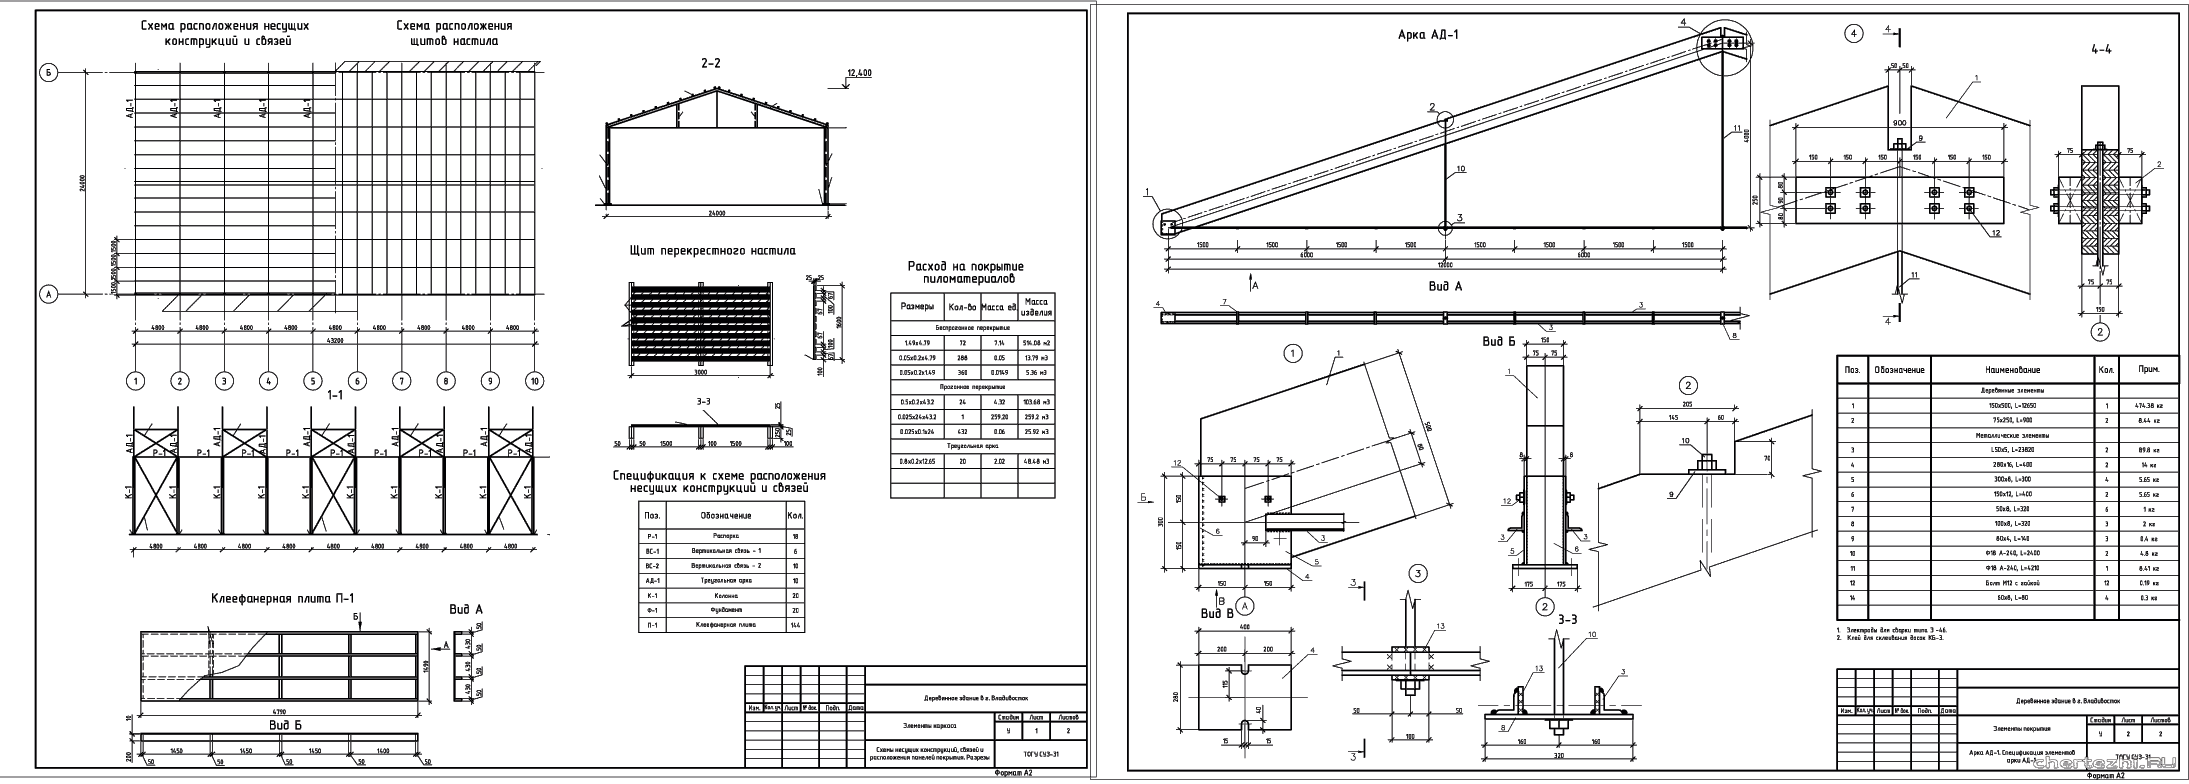 Курсовой проект - Проектирование конструкций покрытия деревянного производственного здания 43,2 х 24,0 м в г. Владивосток